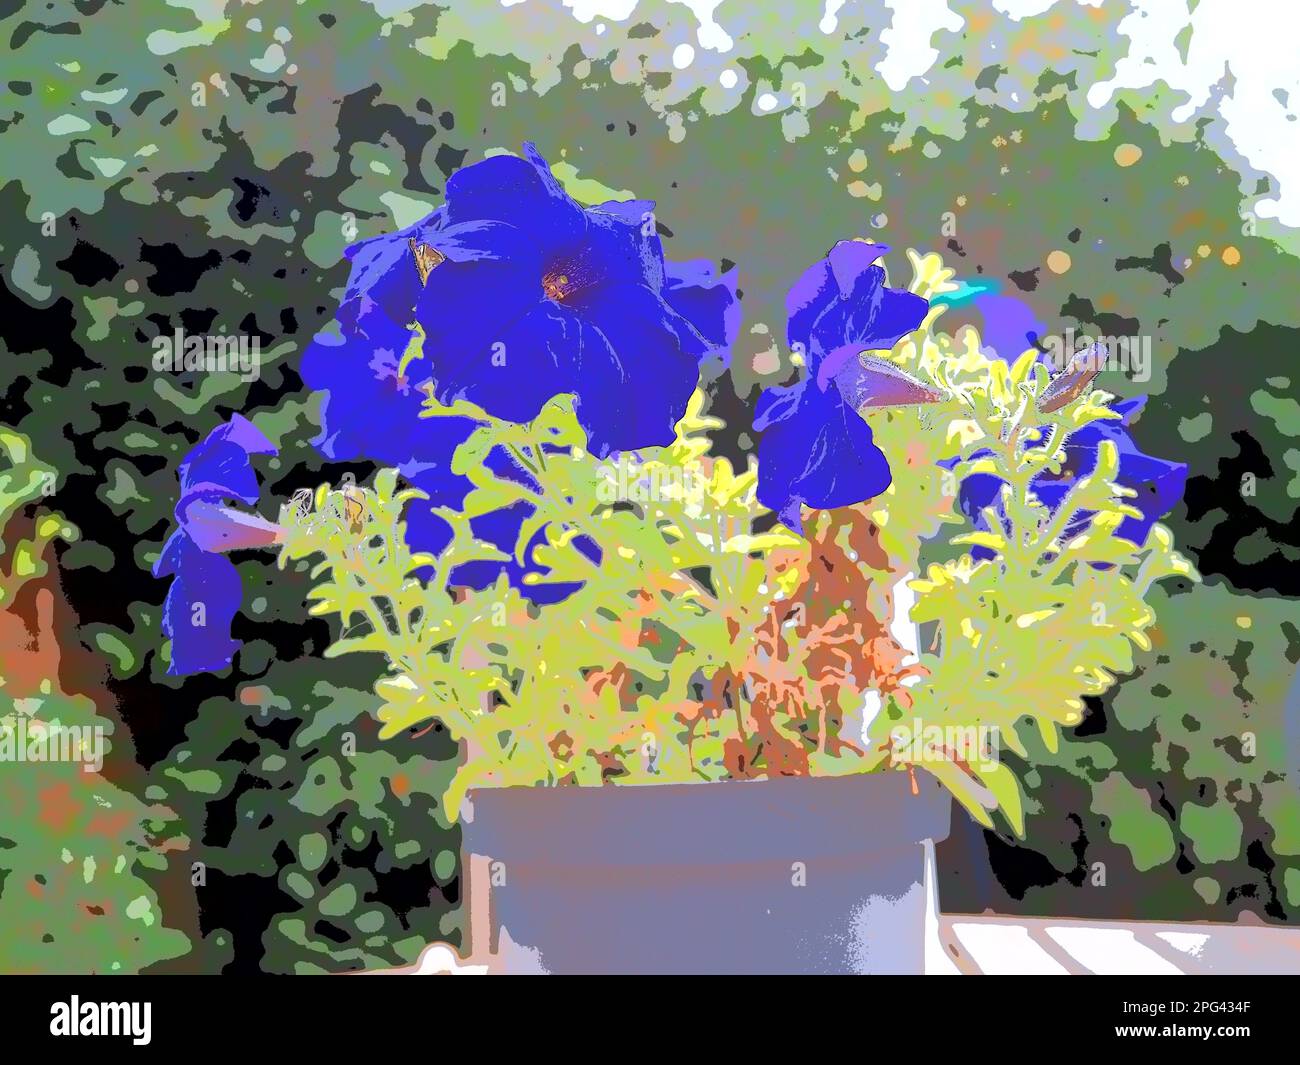 Kobaltblaue Petunia-Surfinia-Blüten in einem Topf, das Bild wird gesteuert, um den Tonwertbereich zu reduzieren und ein künstlerisches druckähnliches Bild zu erzeugen. Stockfoto